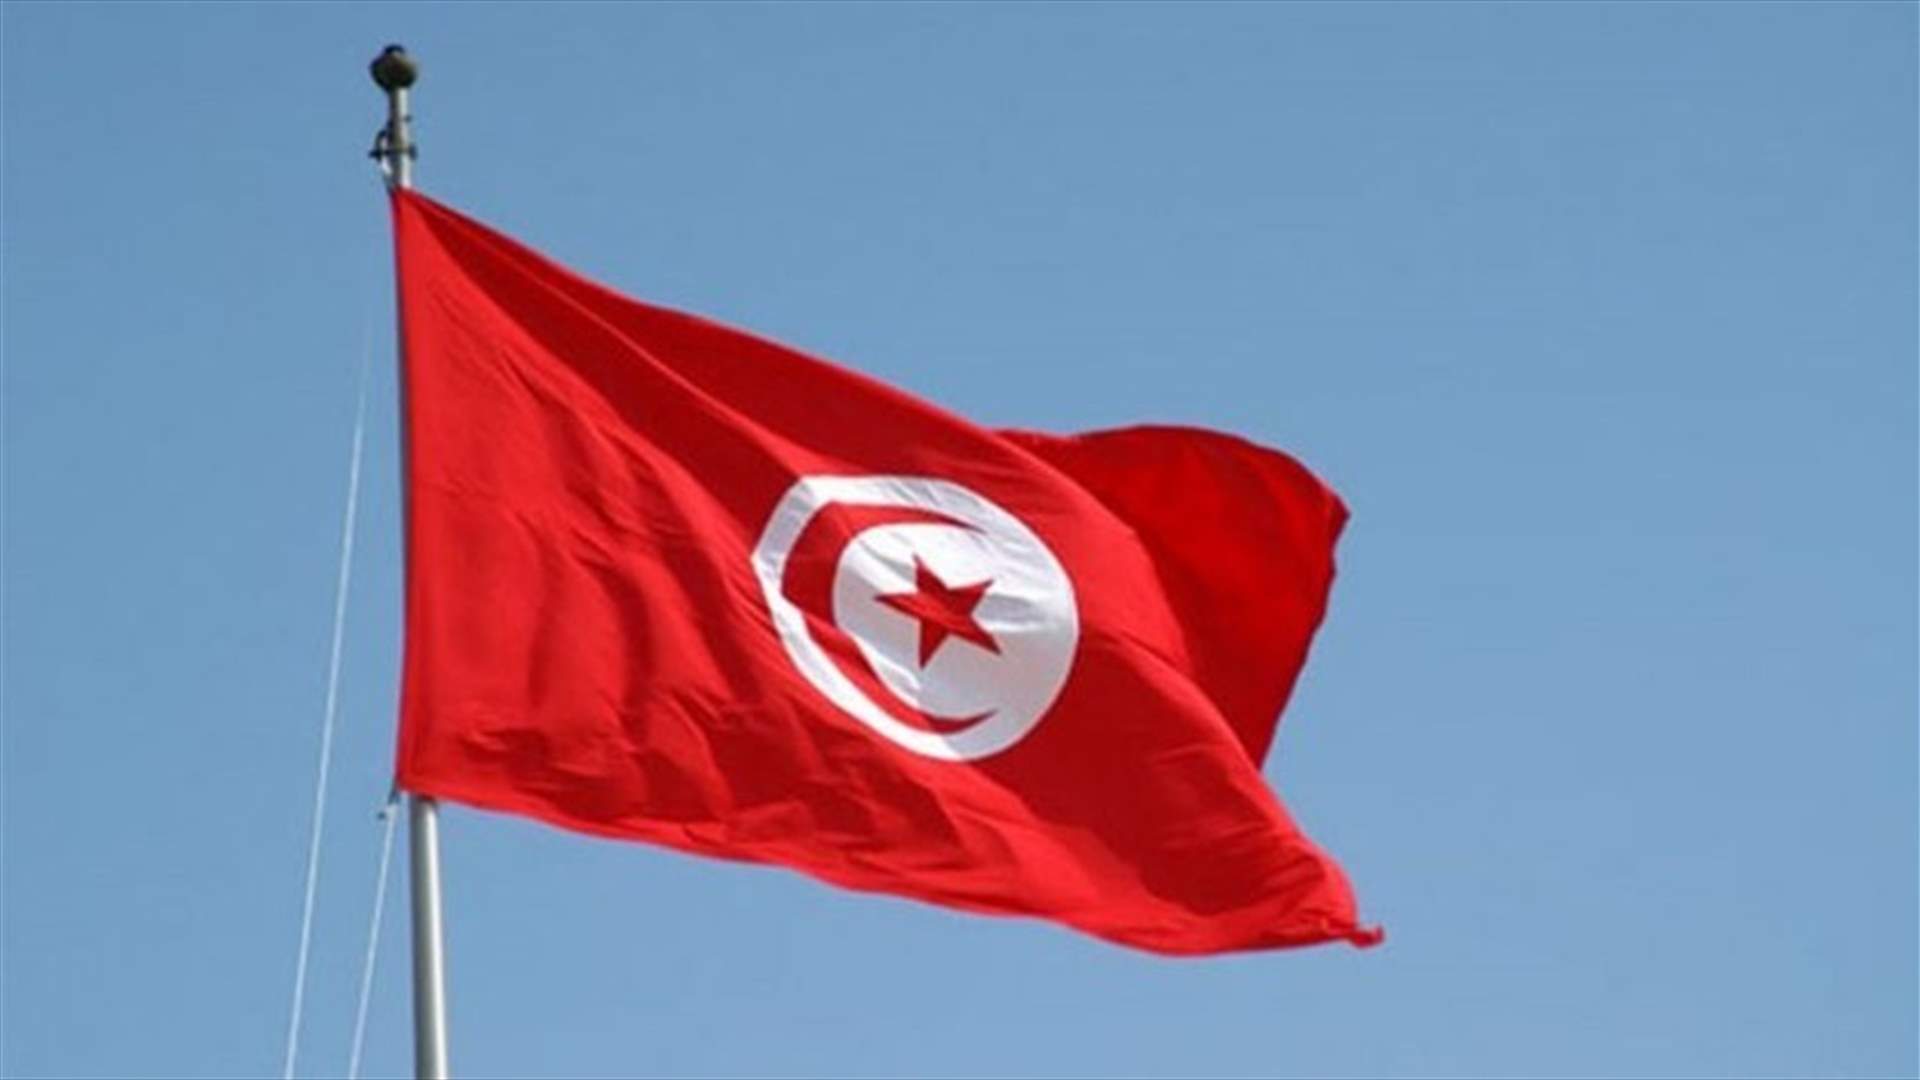 تونس تعلن ان الرجل الذي حاول طعن رجال الشرطة هو مصنف لديها كعنصر تكفيري